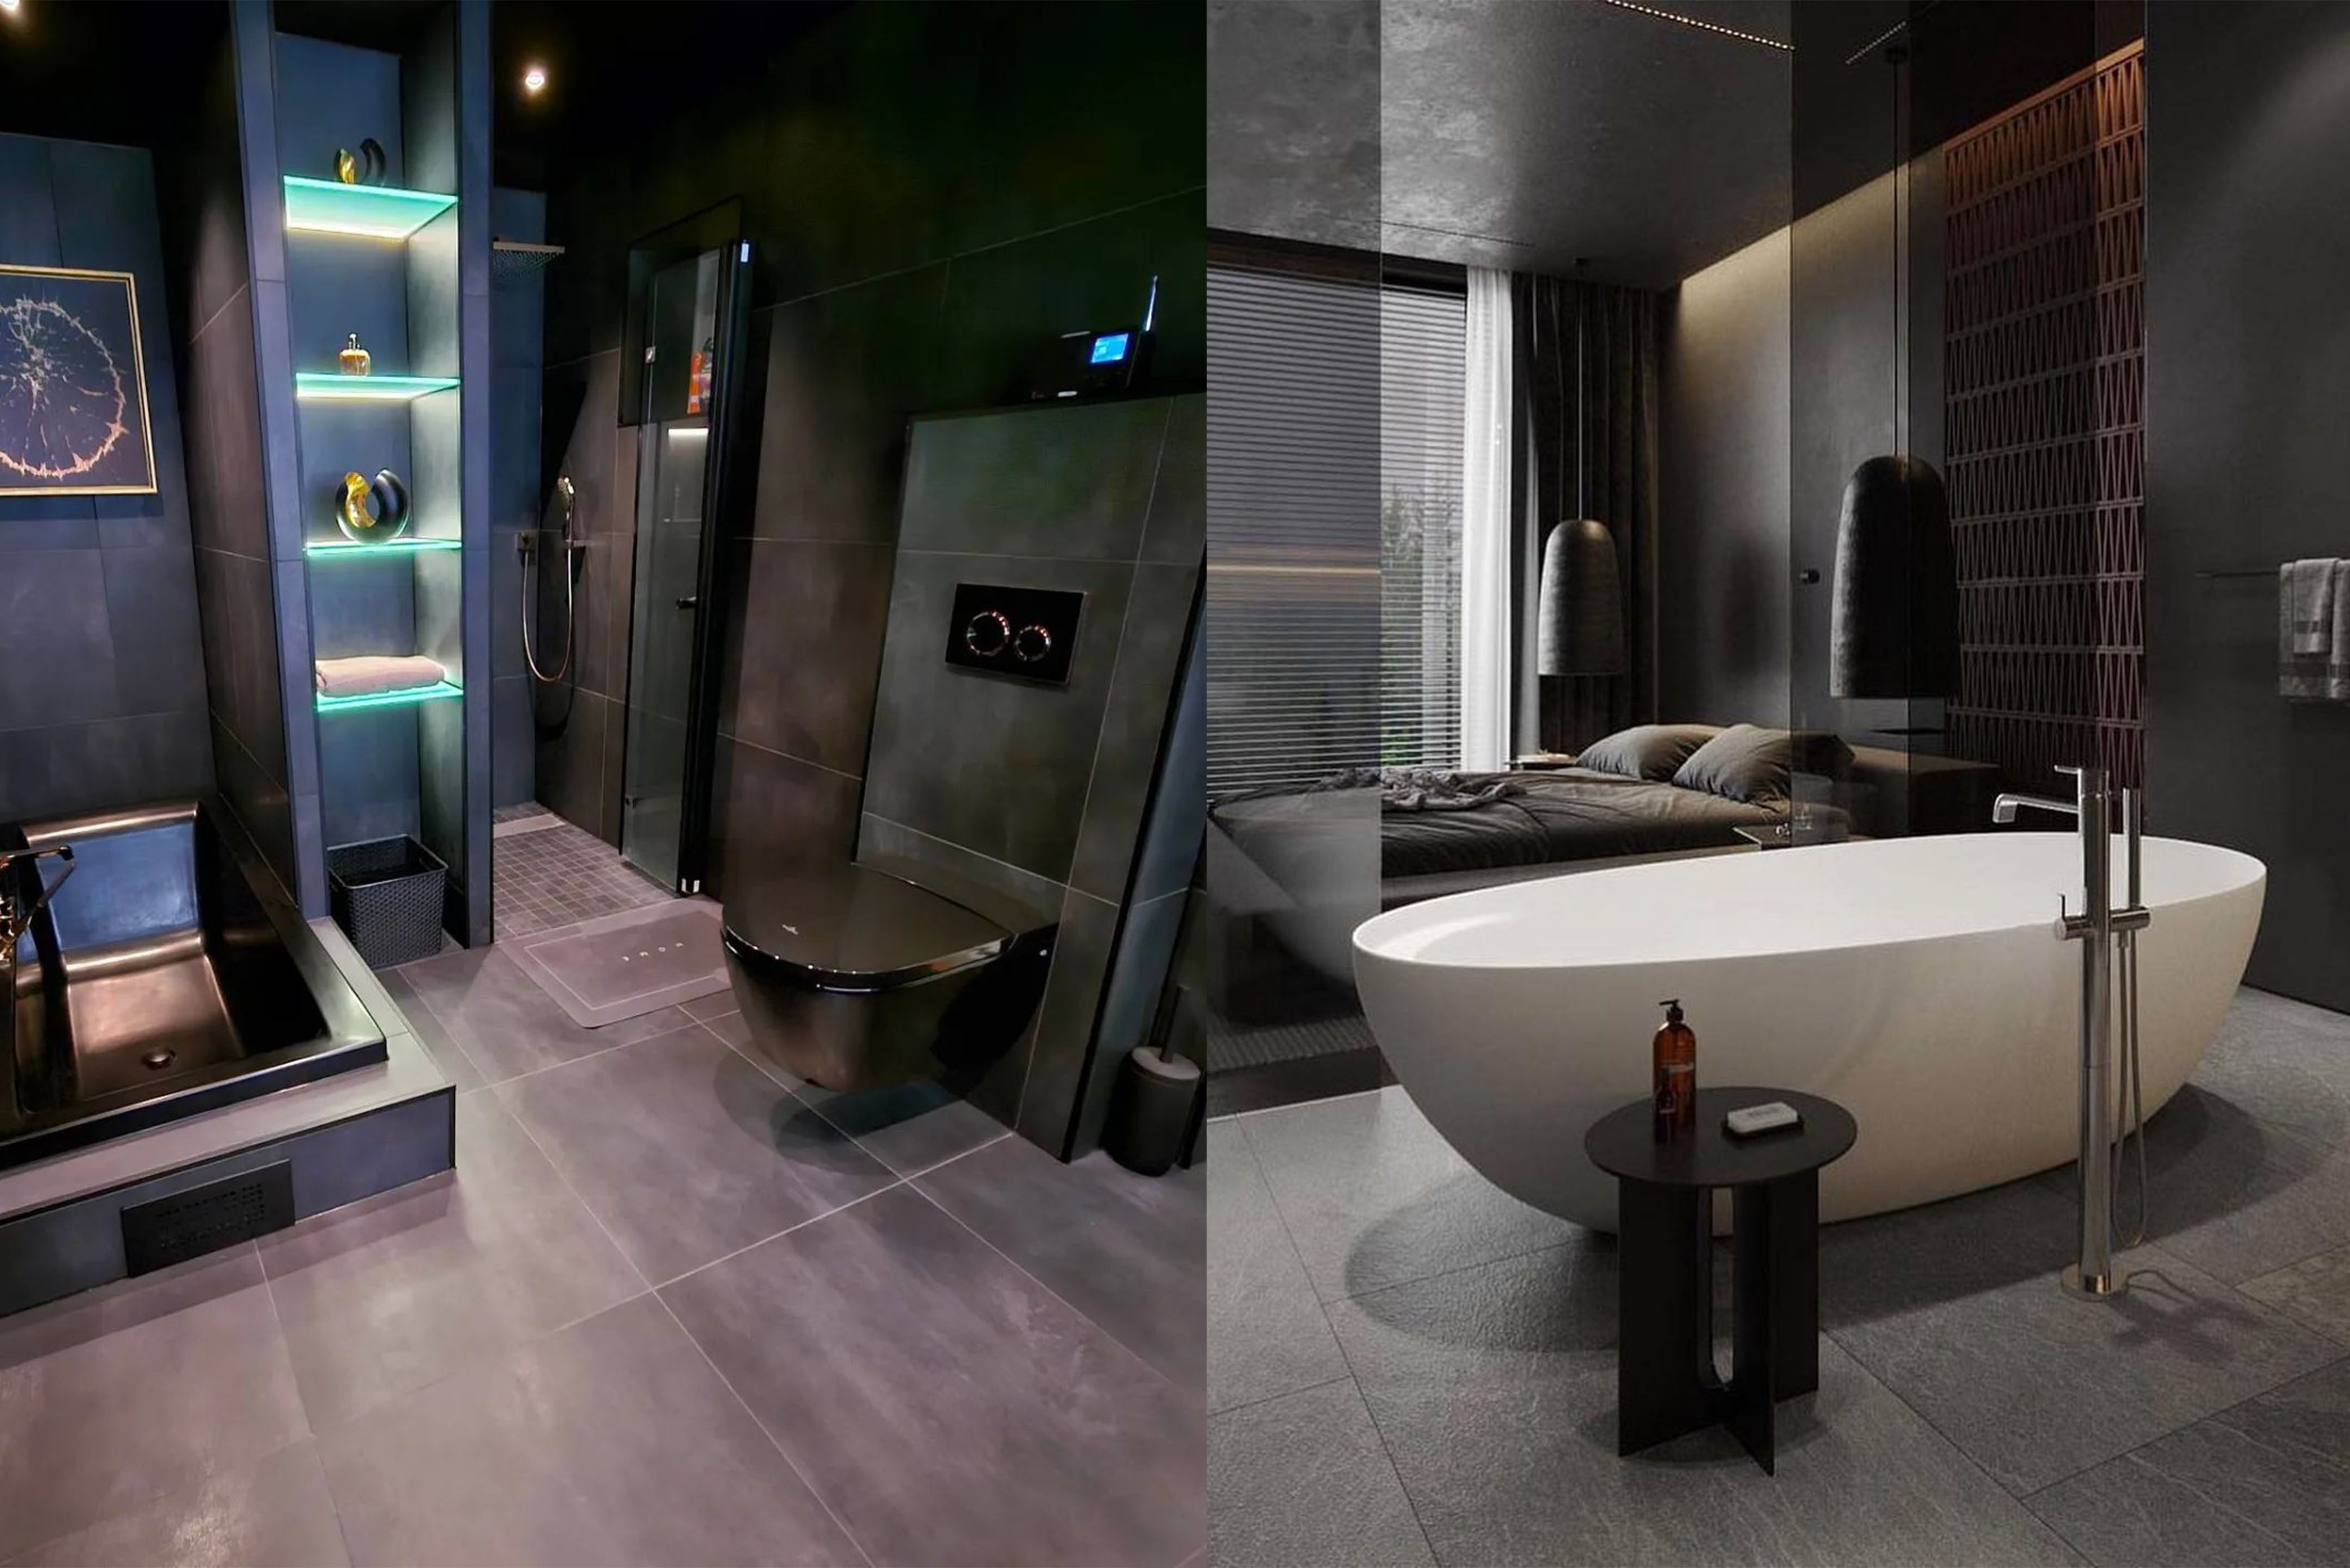 25 Stunning Luxury Black Bathroom Ideas For 2023